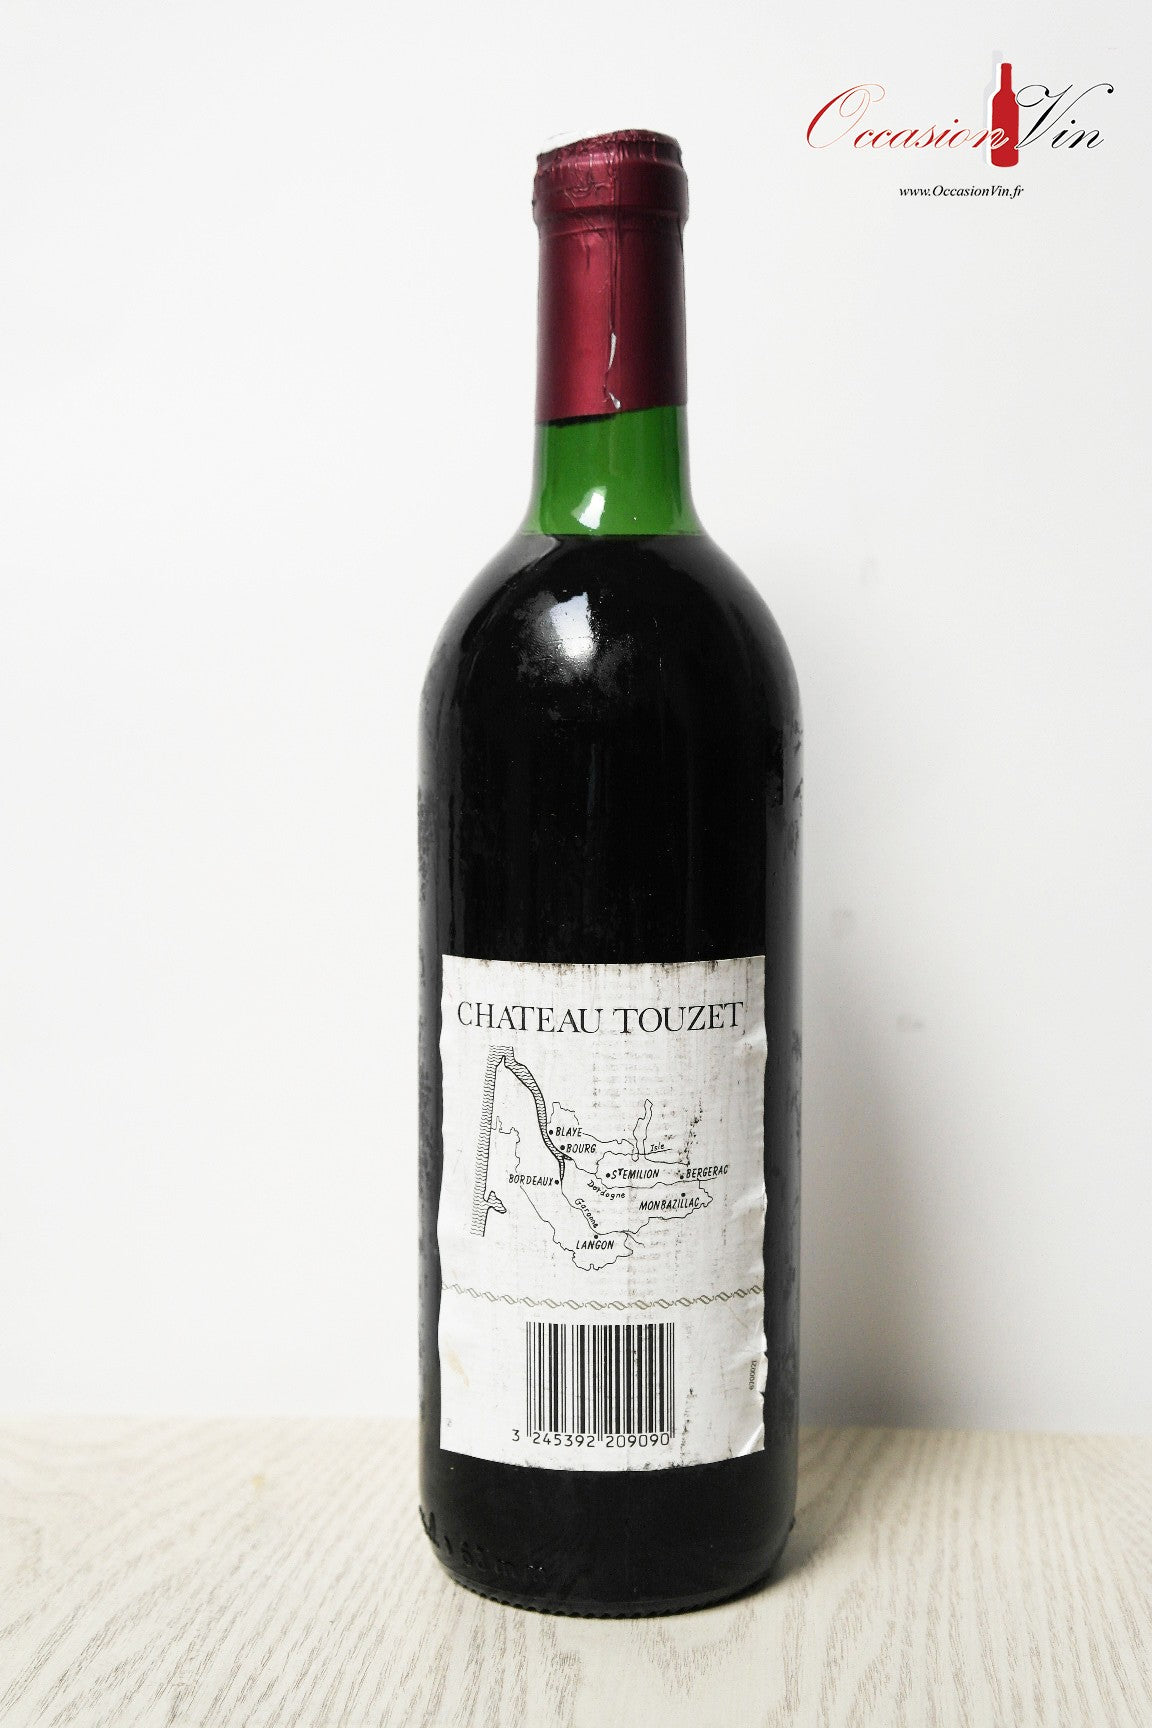 Château Touzet Vin 1990